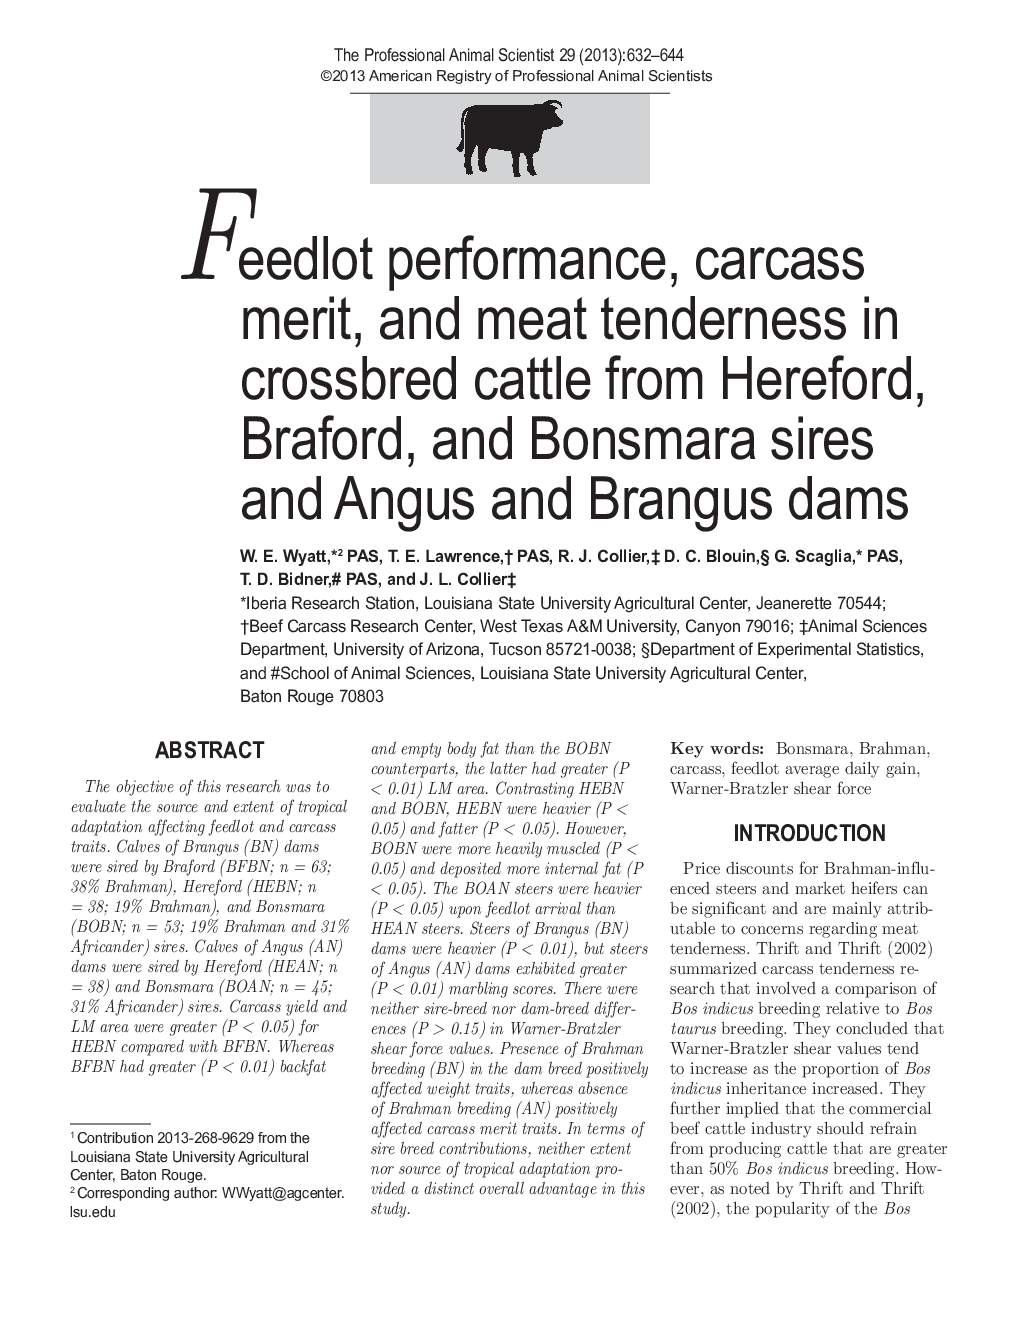 عملکرد خوراکی، شایستگی لاشه و حساسیت گوشتی در گاوهای متحرک از هلند، برافورد و بونسمارا و سدهای انجس و برنگوس 